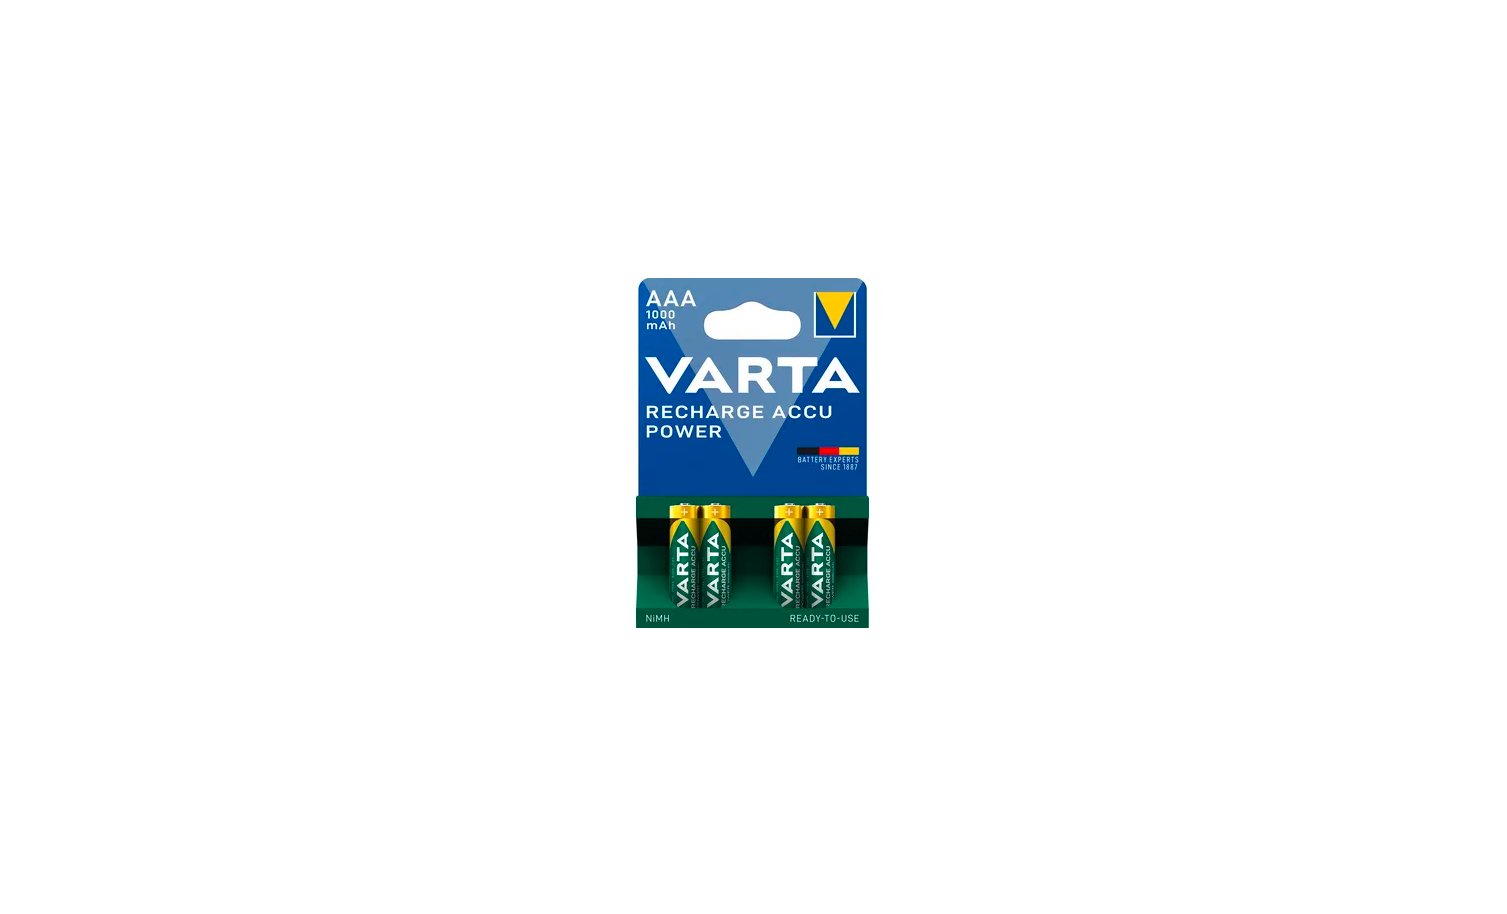 Varta Recharge Accu Power AAA 1000mAh 1.2V 4szt.